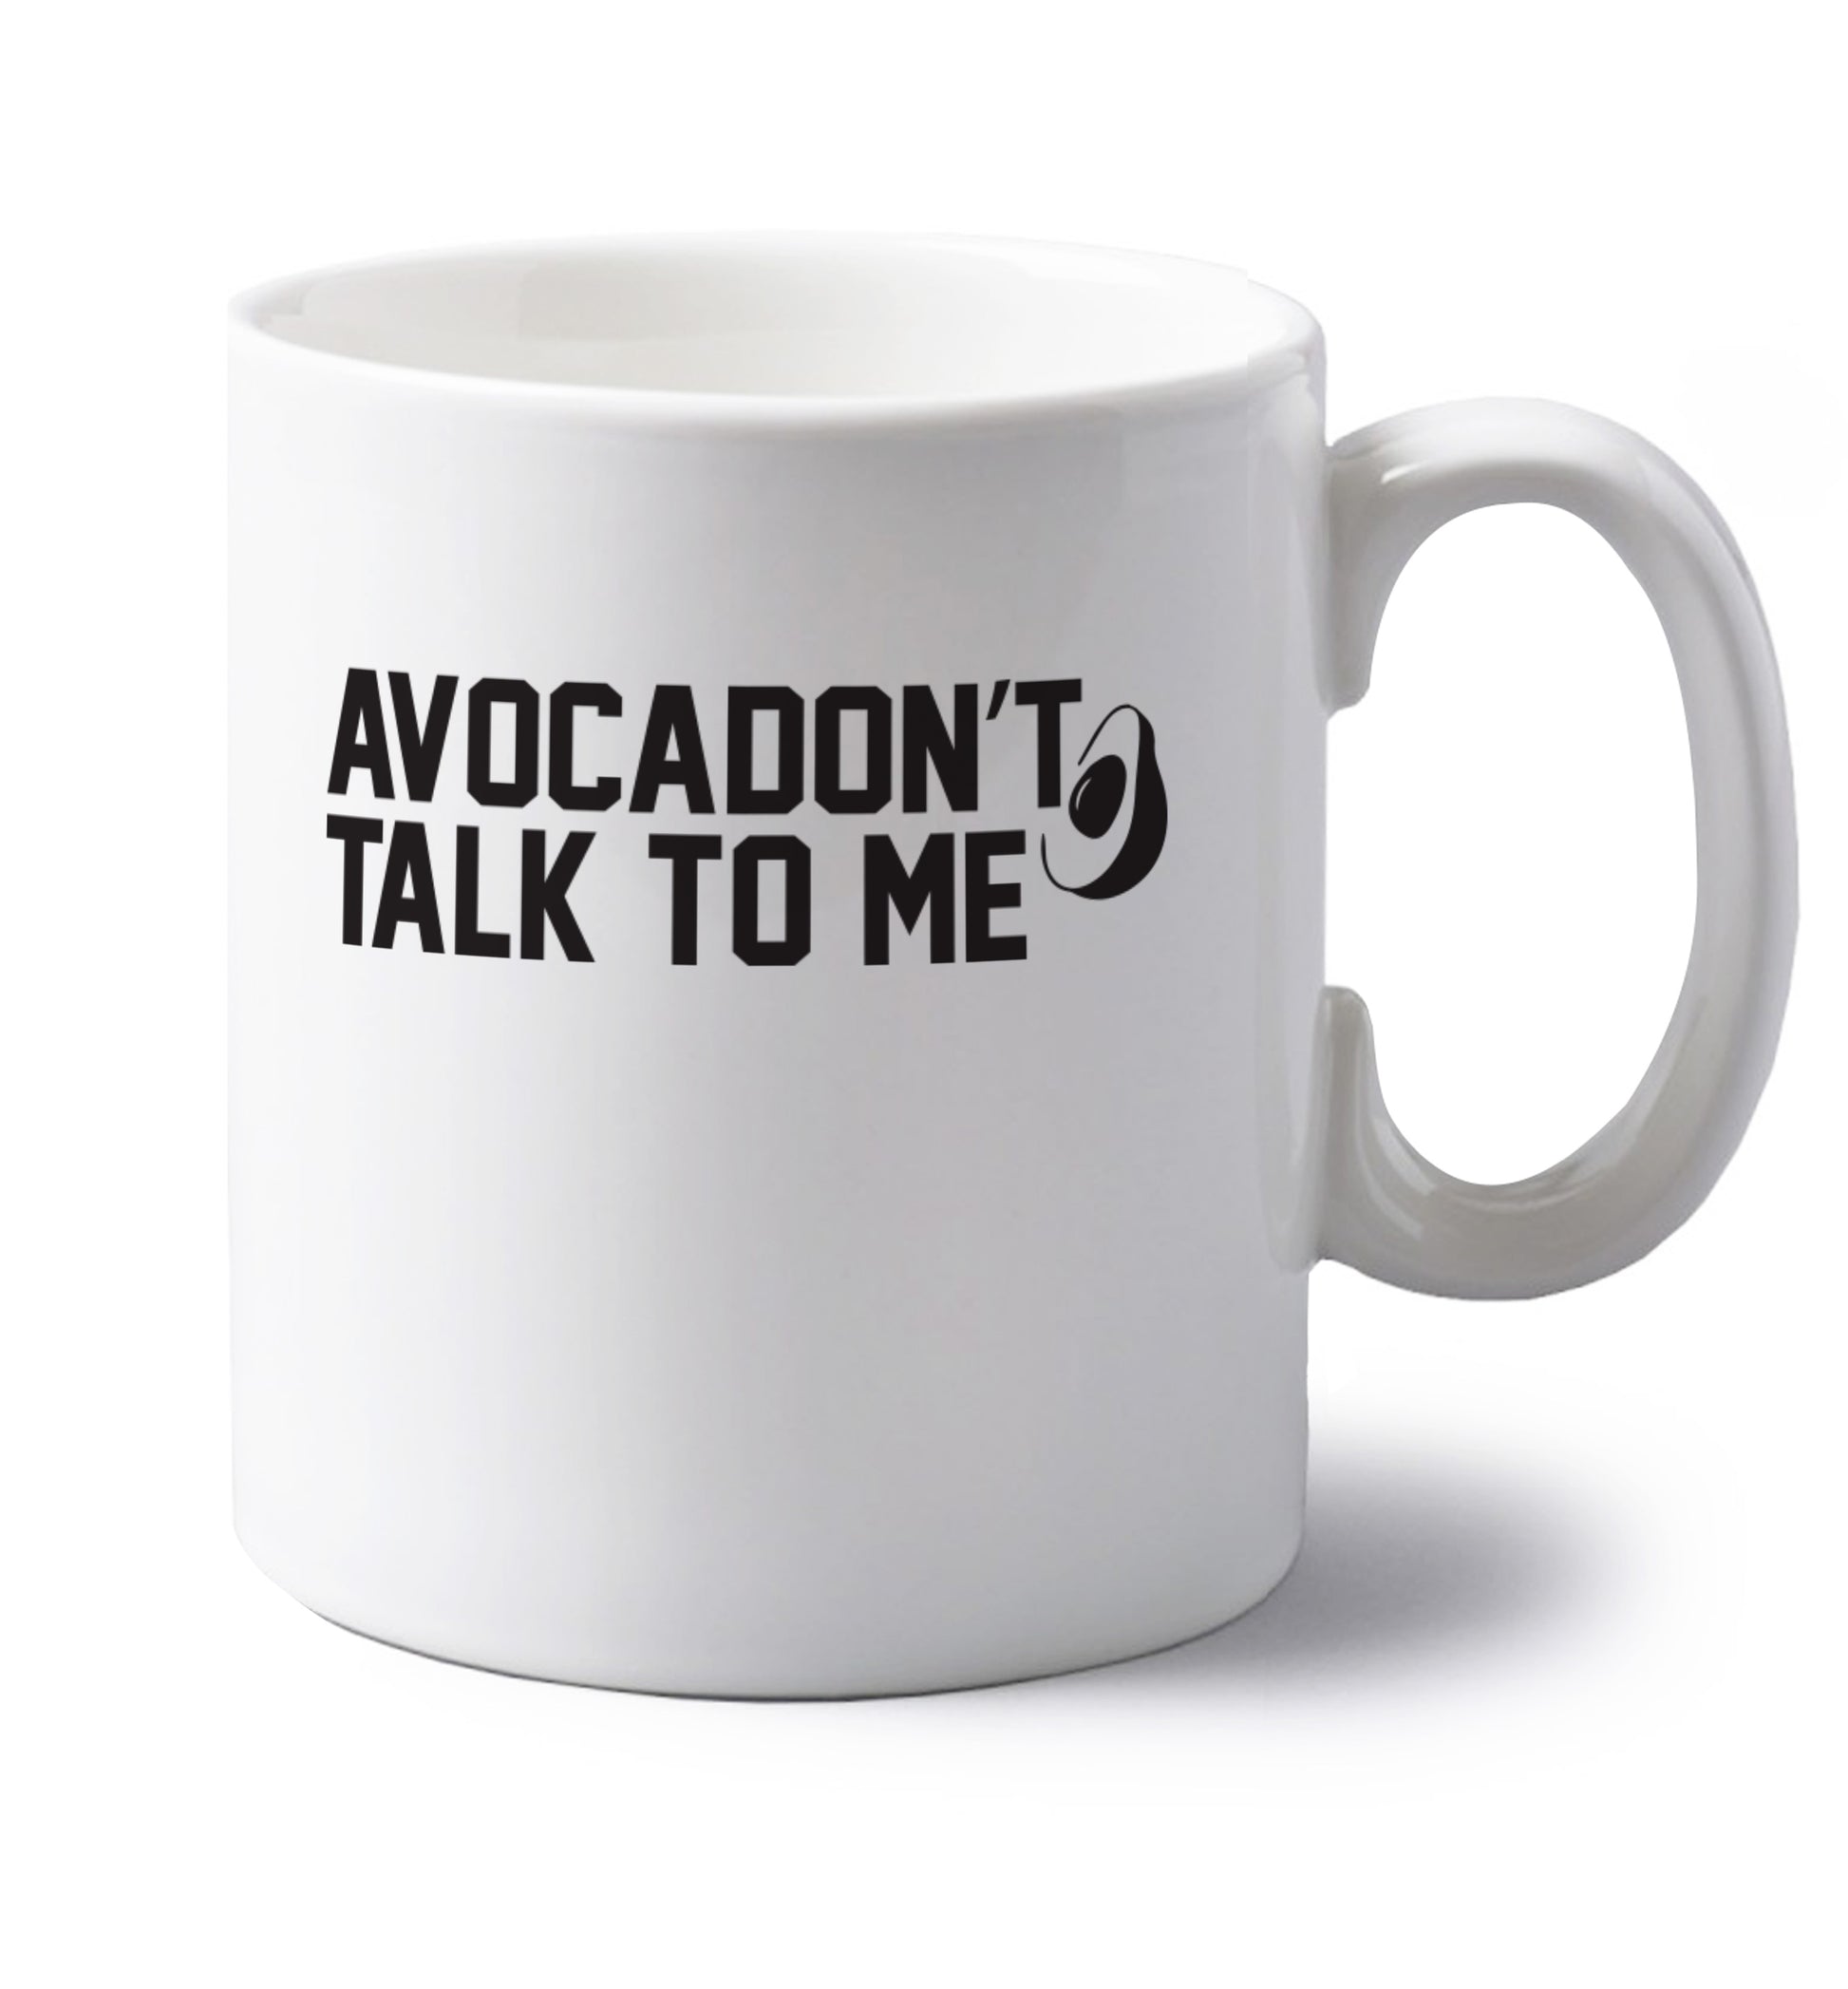 Avocadon't talk to me left handed white ceramic mug 